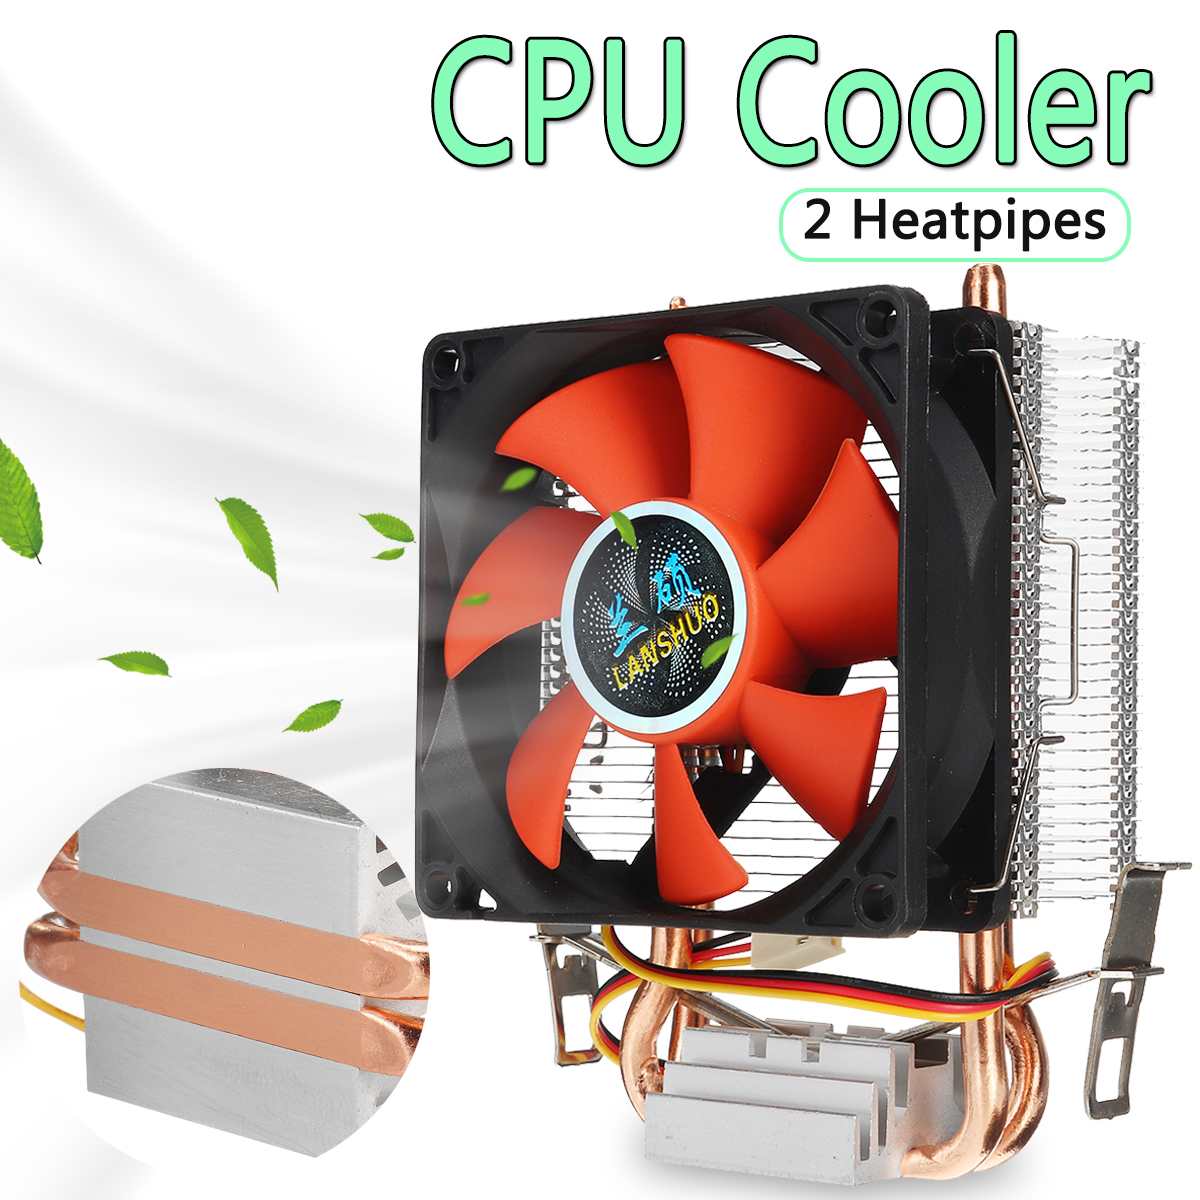 80 Mm 2 Koperen Heatpipes Pc Cpu Cooler Fan Heatsink Computer 3pin Koelventilator Koeler Radiator Voor Lga 775/1155/1156 Amd AM2 AMD3